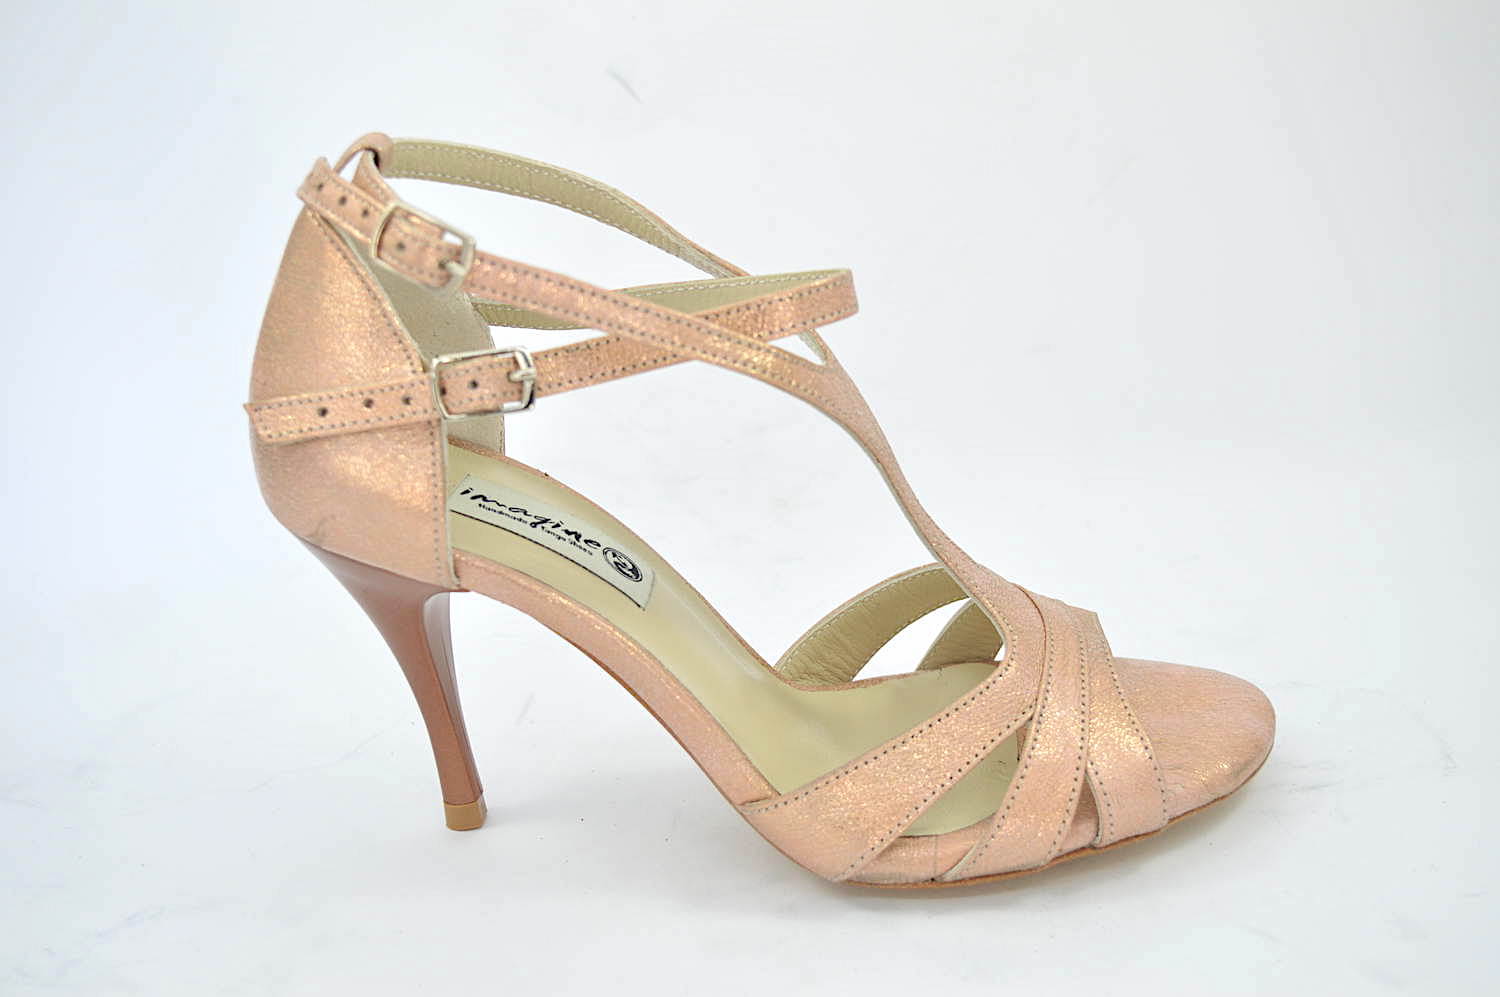 Γυναικείο παπούτσι tango argentino, open toe από μπεζ-ροζ-χρυσό μαλακό δέρμα